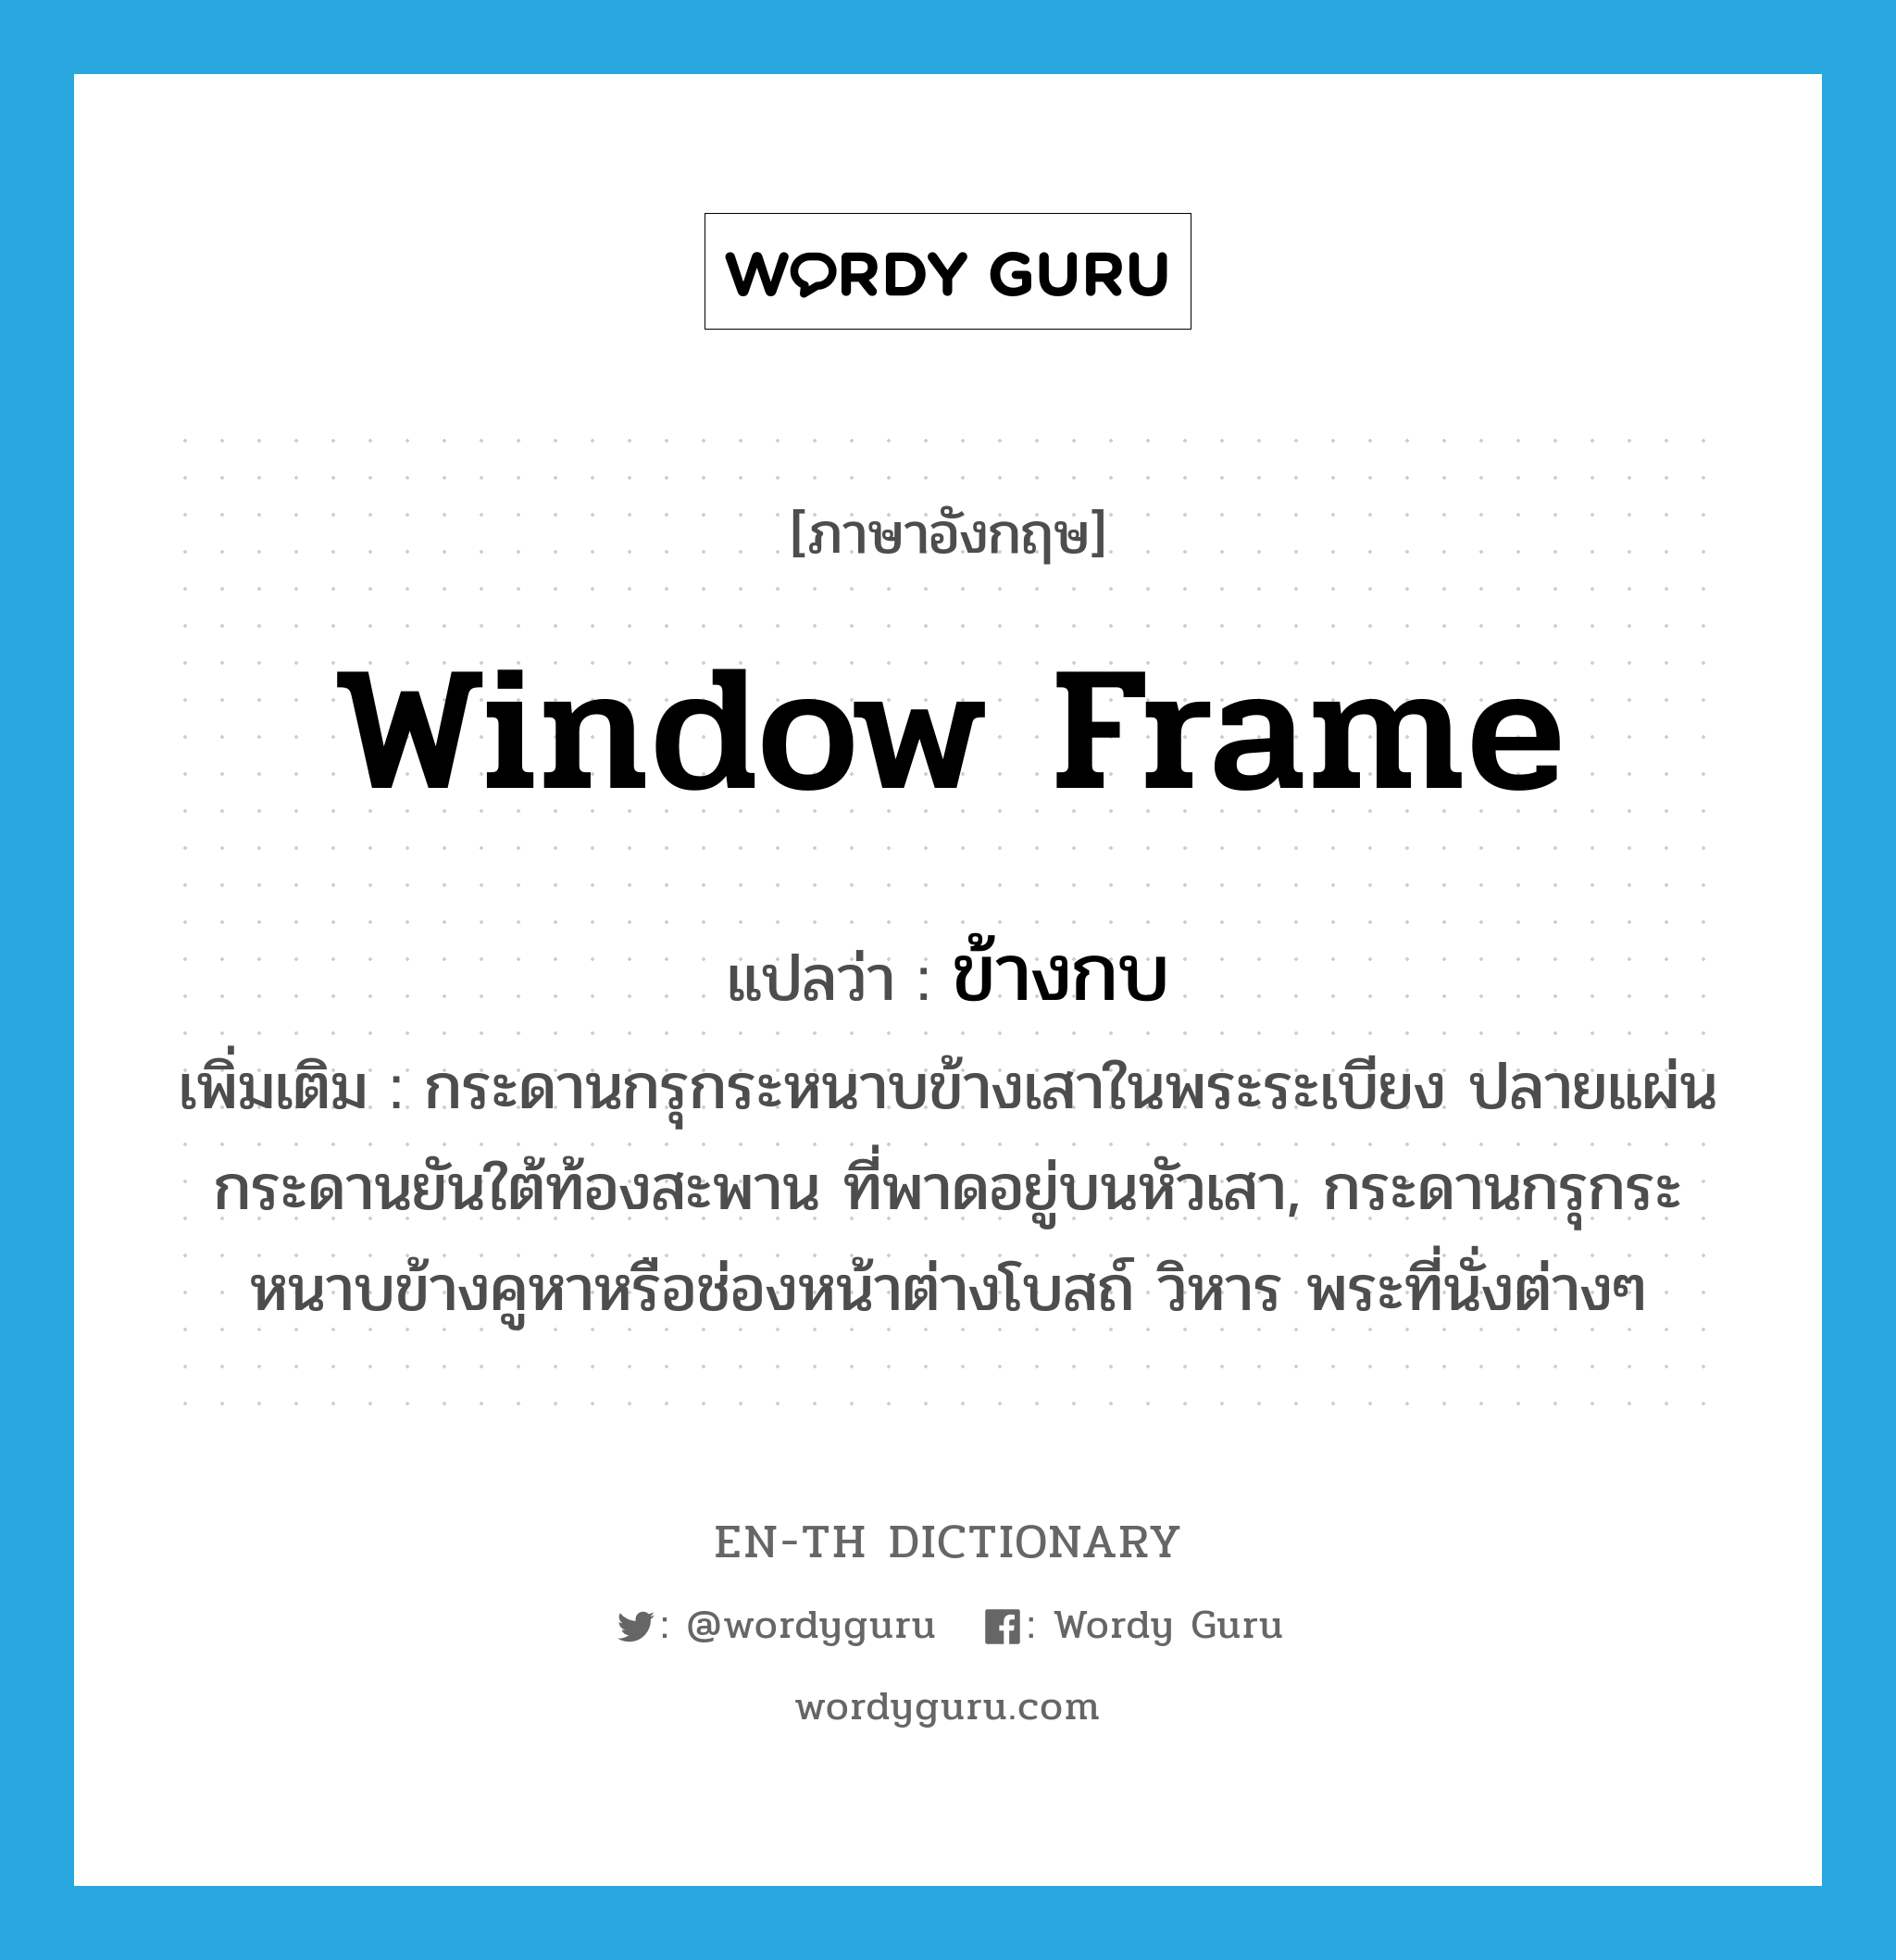 window frame แปลว่า?, คำศัพท์ภาษาอังกฤษ window frame แปลว่า ข้างกบ ประเภท N เพิ่มเติม กระดานกรุกระหนาบข้างเสาในพระระเบียง ปลายแผ่นกระดานยันใต้ท้องสะพาน ที่พาดอยู่บนหัวเสา, กระดานกรุกระหนาบข้างคูหาหรือช่องหน้าต่างโบสถ์ วิหาร พระที่นั่งต่างๆ หมวด N